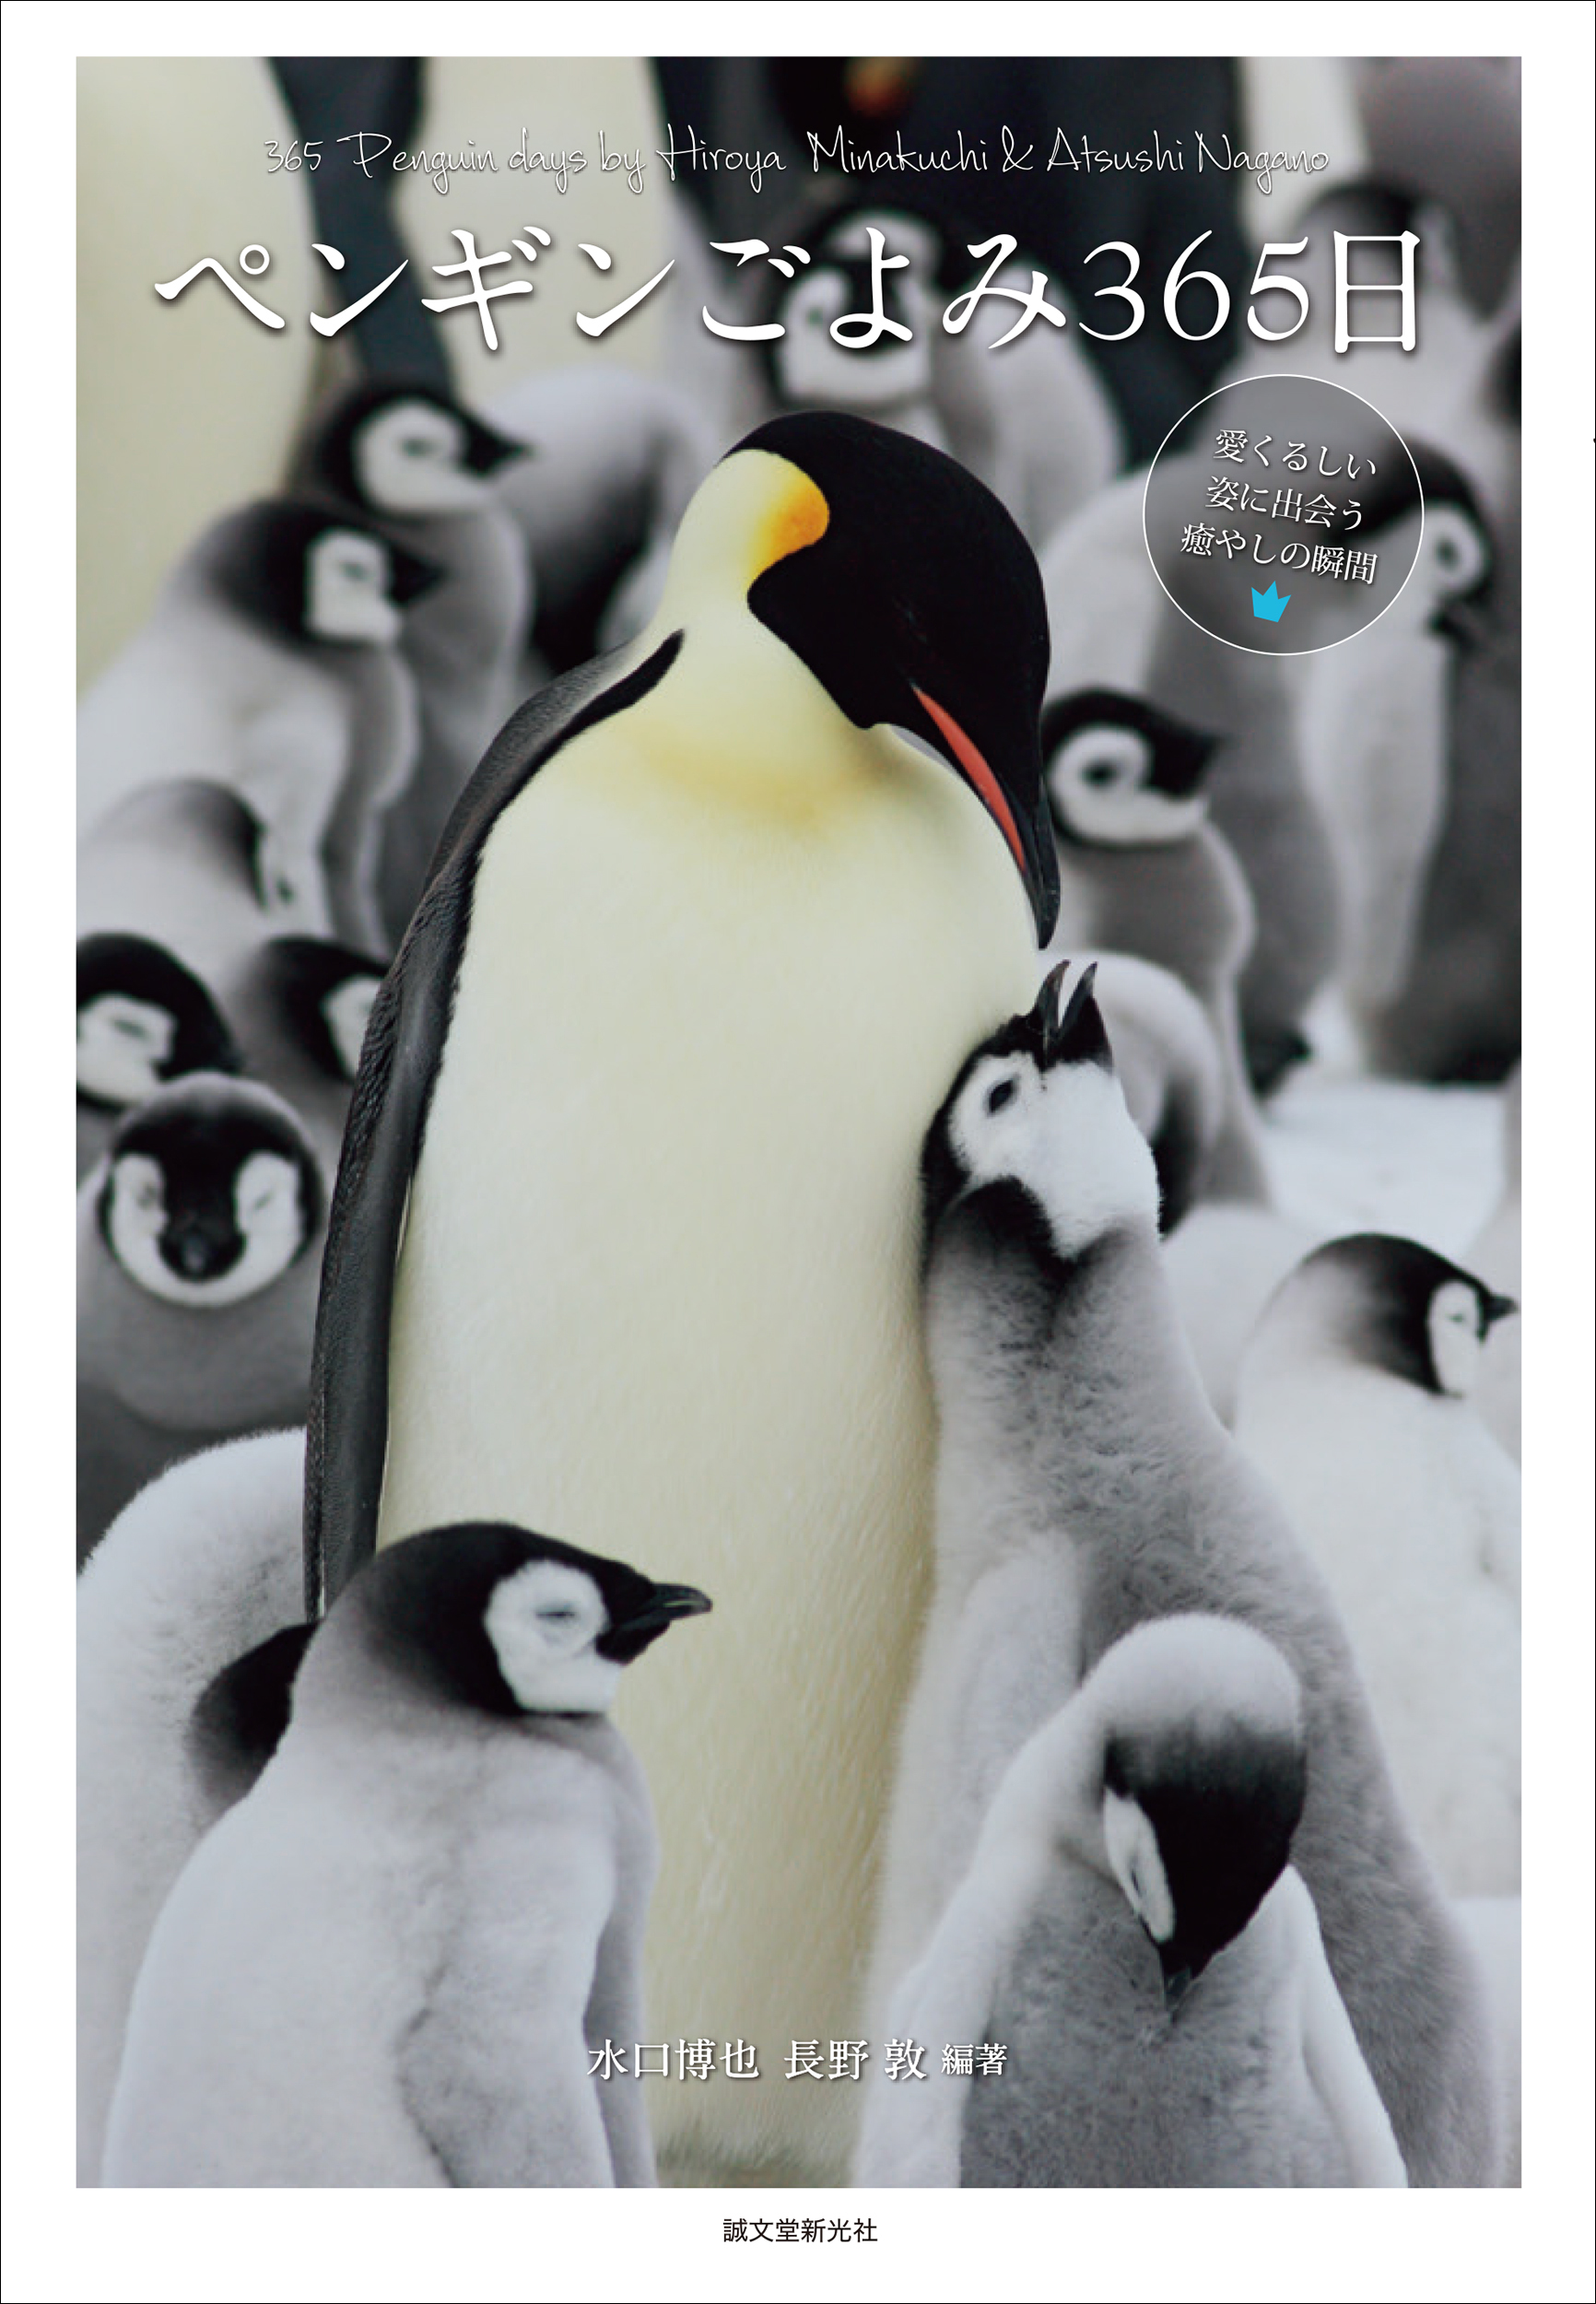 1年365日 それぞれの季節に見る世界18種のペンギンたちの暮らしに思いを馳せる一冊 株式会社誠文堂新光社のプレスリリース